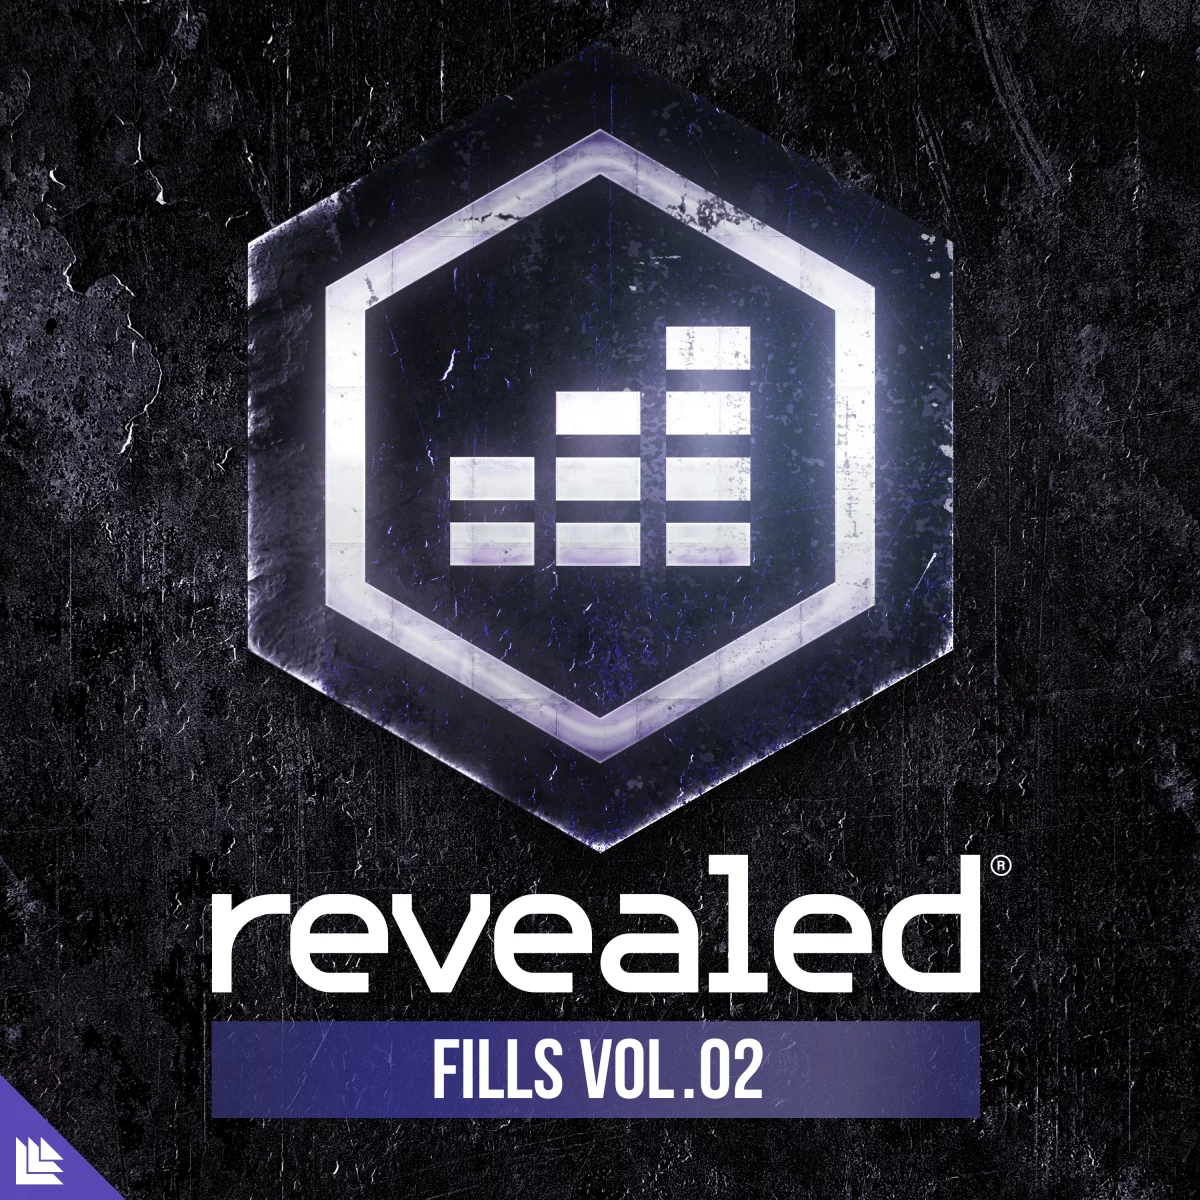 Revealed Fills Vol. 2 - revealedrec⁠ 